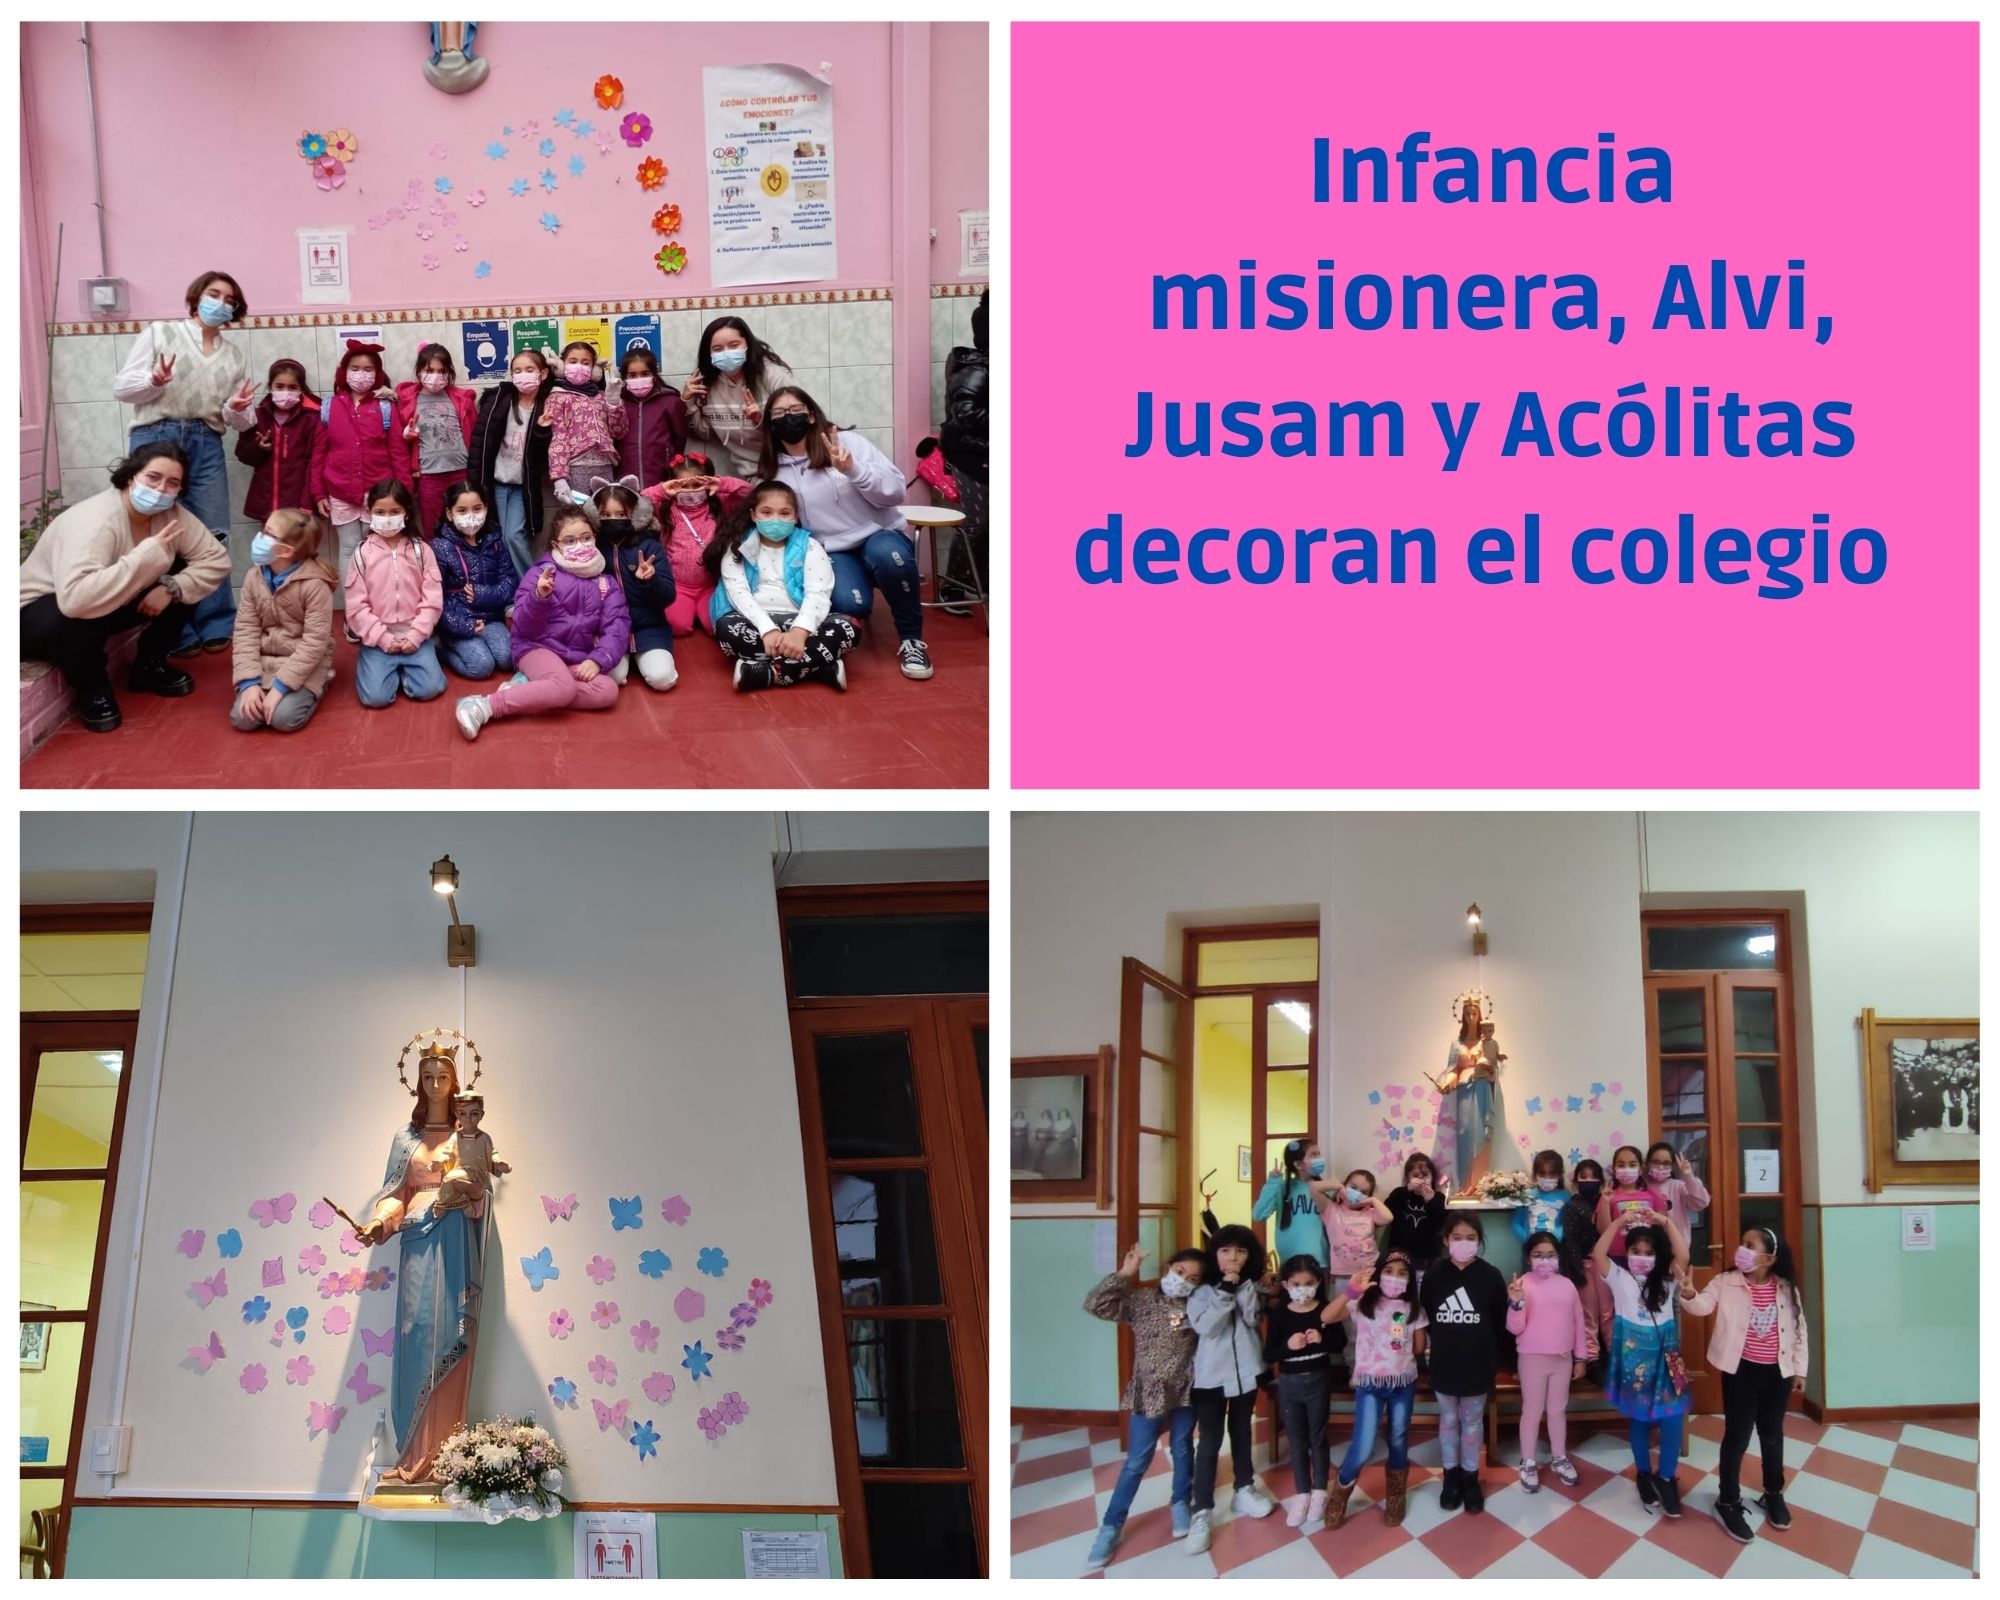 Infancia_misionera_Alvi_Jusam_y_Acólitas_decoran_el_colegio.jpg